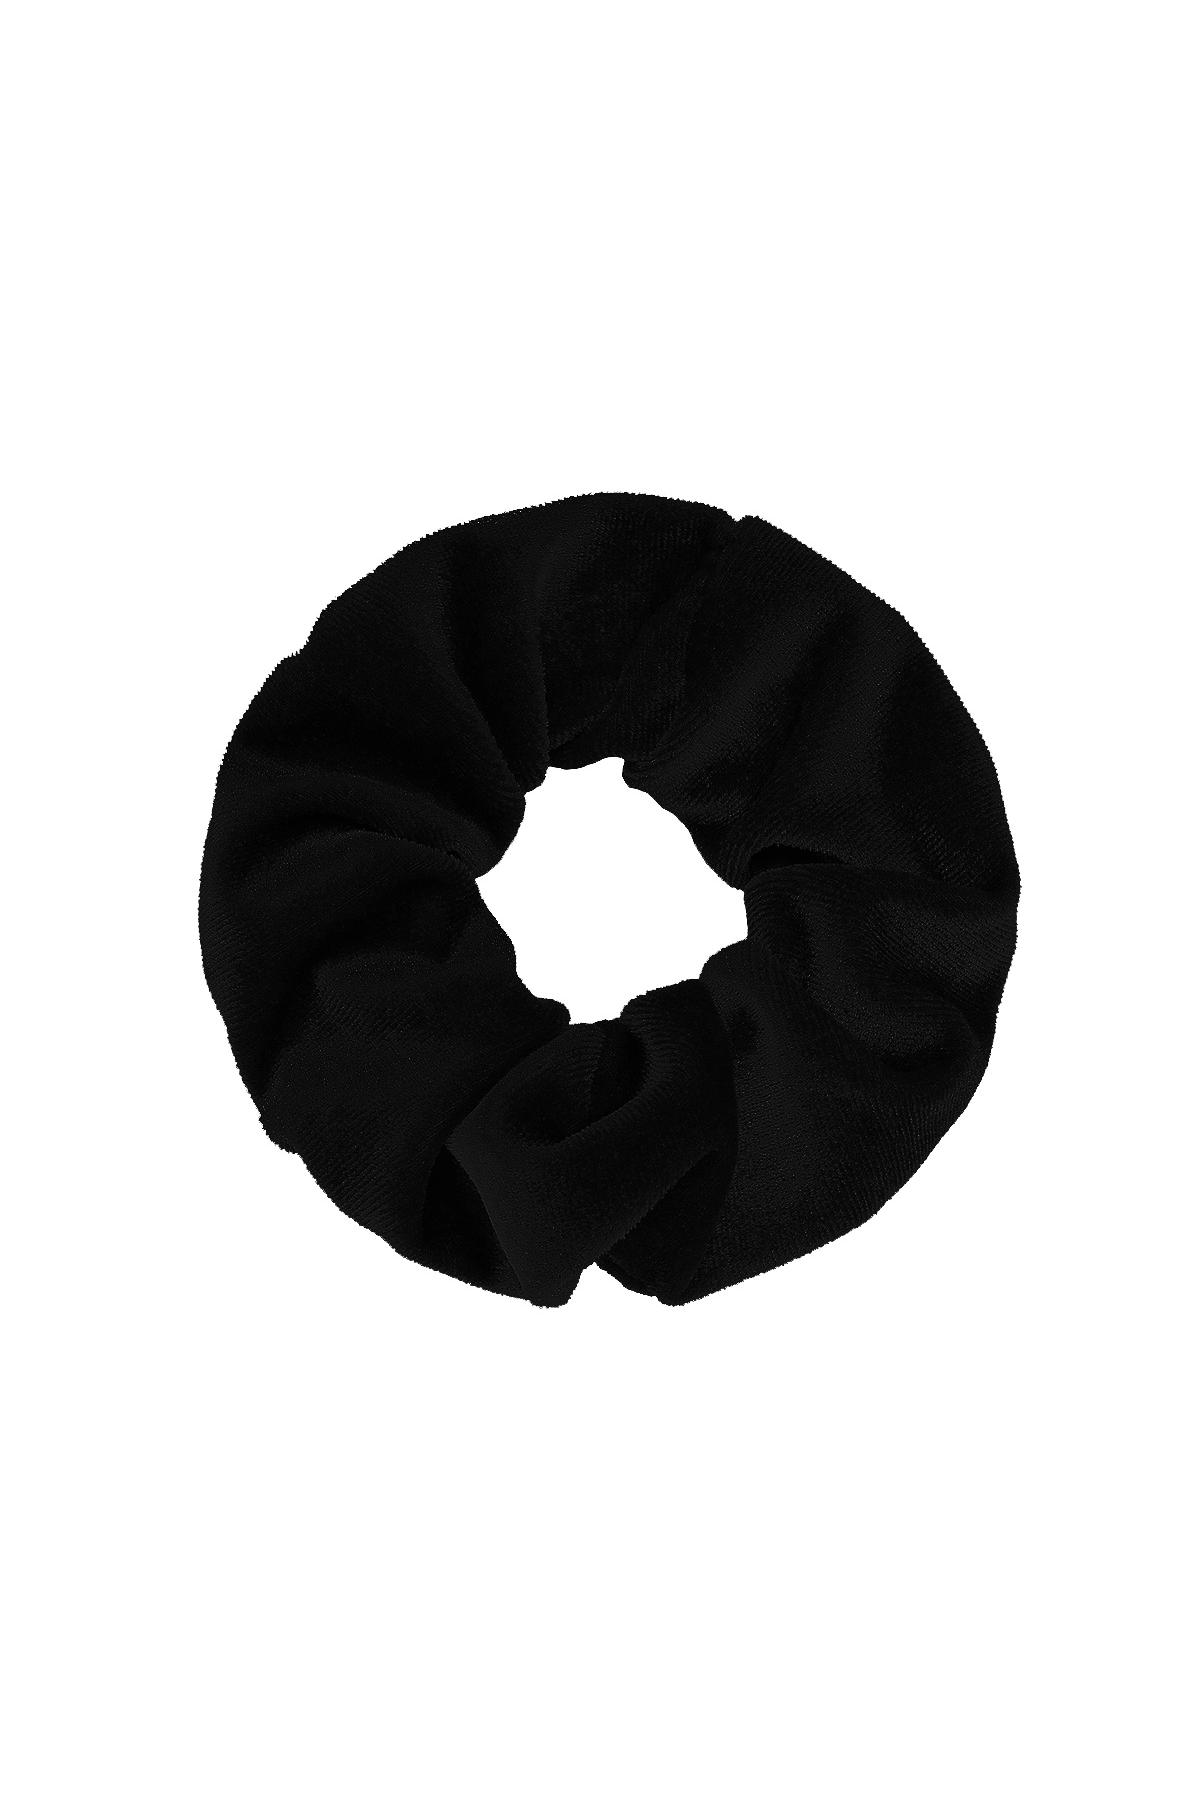 Temel saç lastiği - siyah Black Polyester h5 